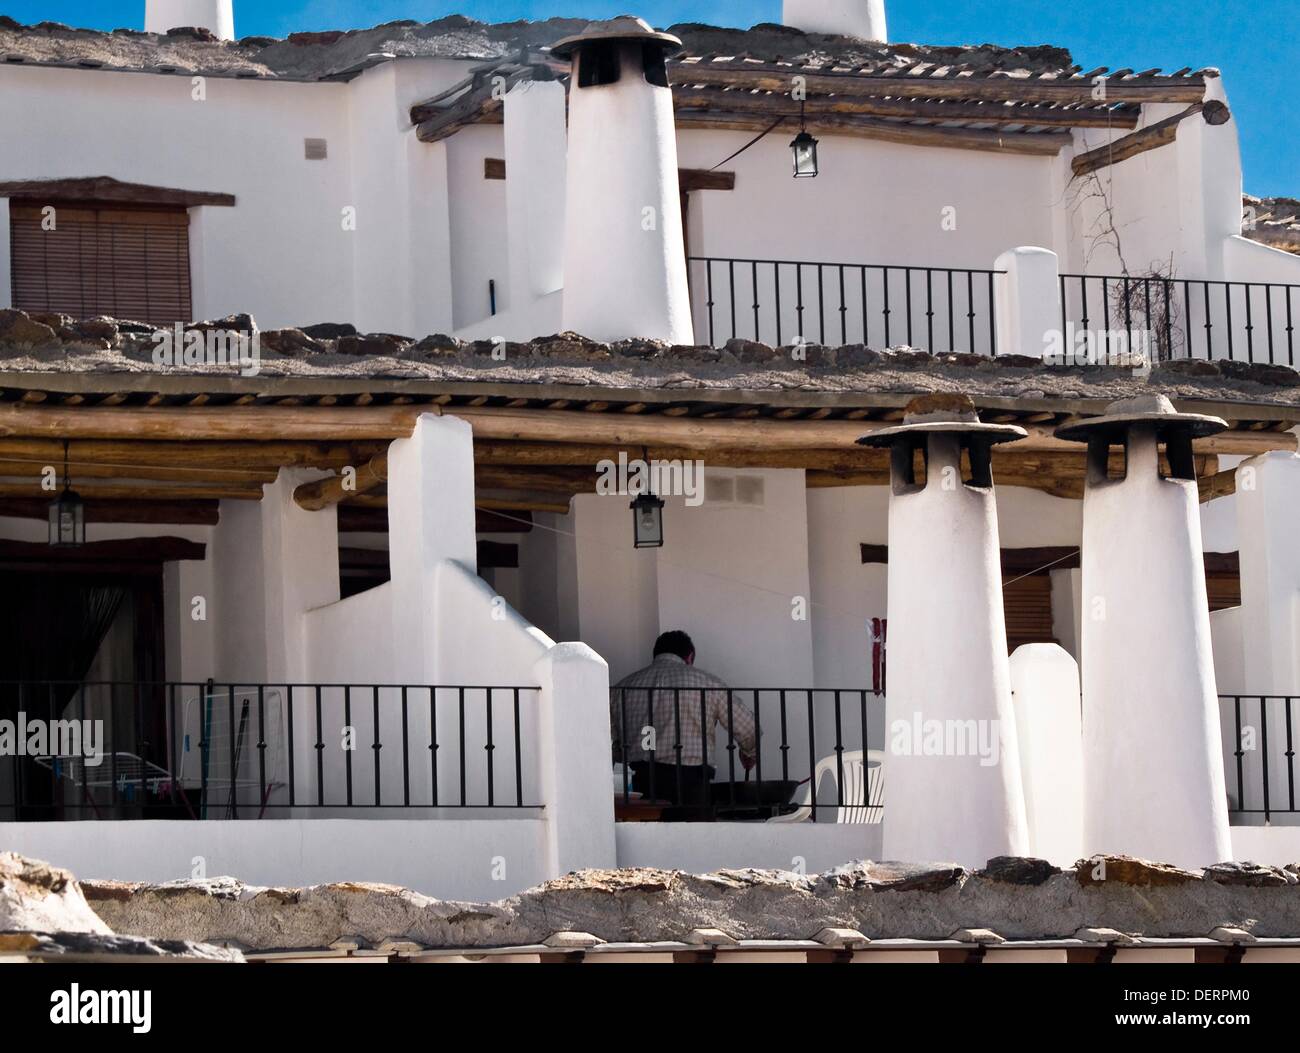 Chimeneas y terrazas típicas en las casas de tejados planos de Capileira,  localidad situada en el Barranco de Poqueira de las Stock Photo - Alamy